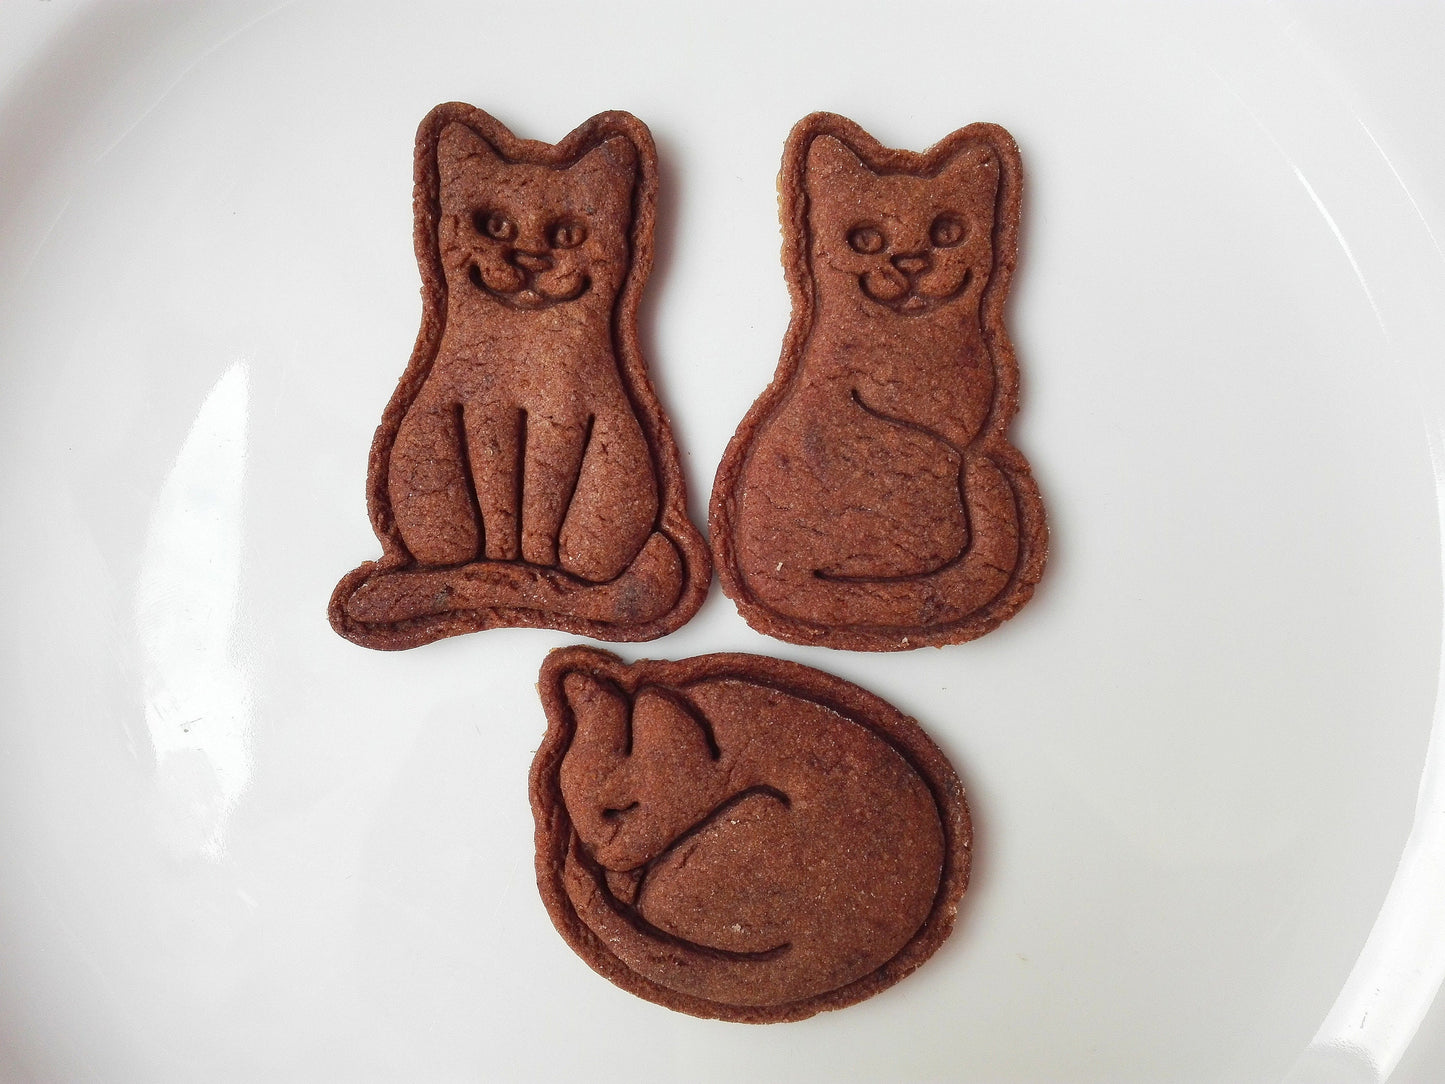 Sleeping cat - cookie cutter set